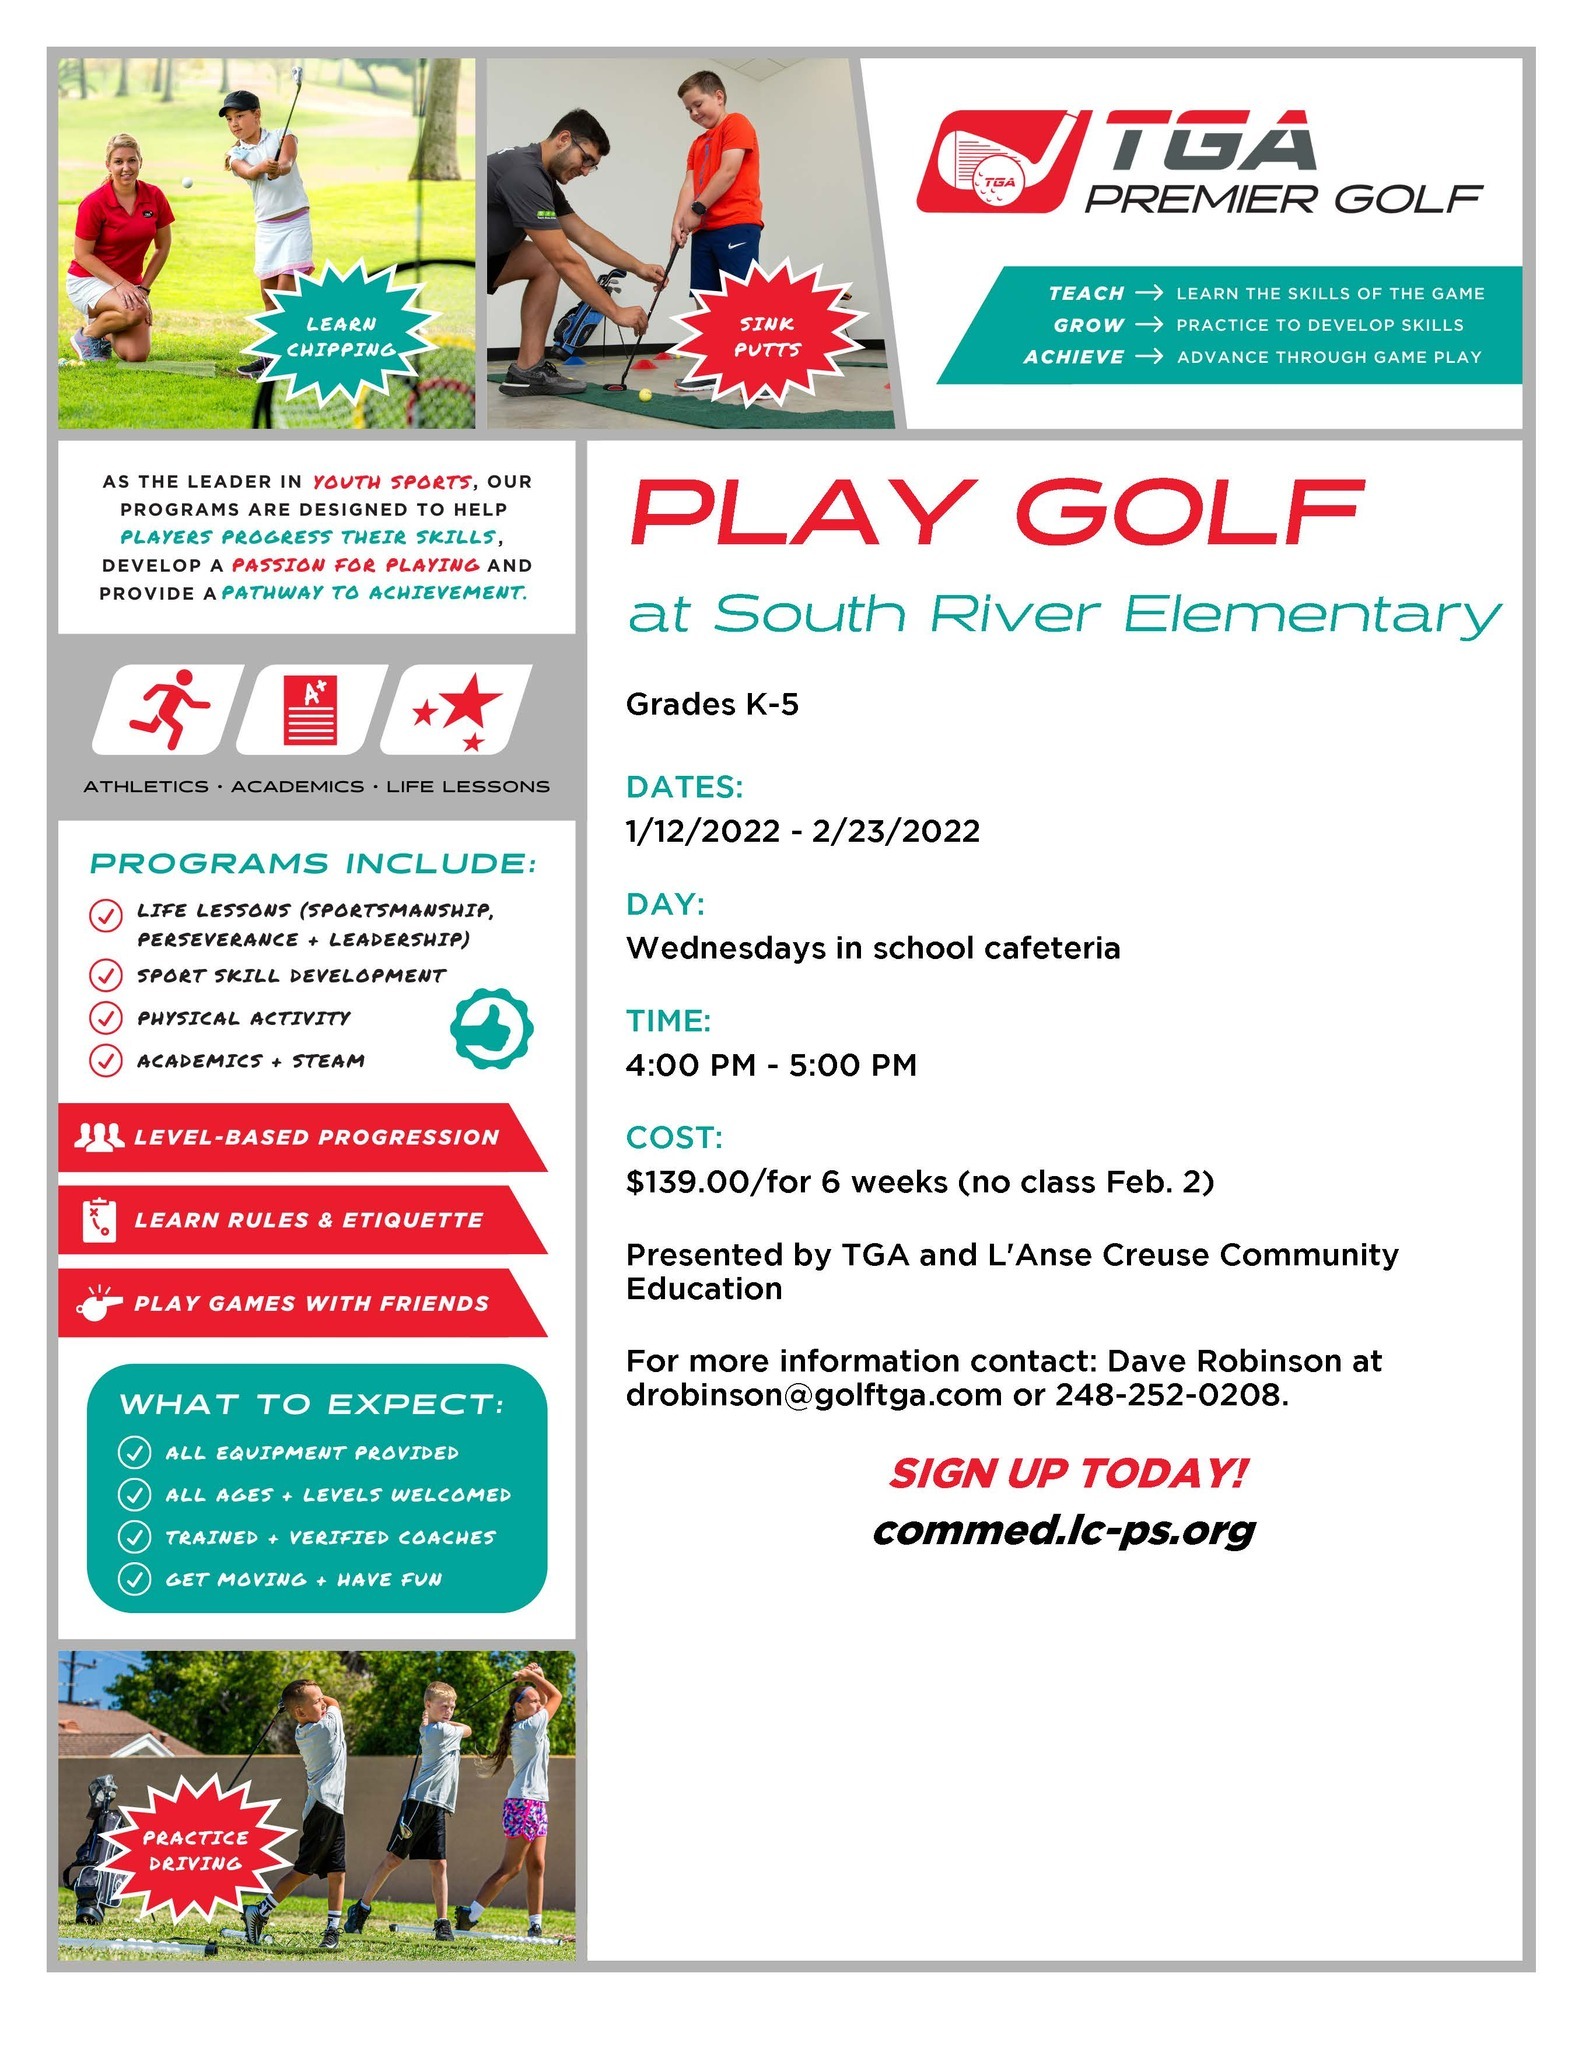 TGA Golf Flyer for South River